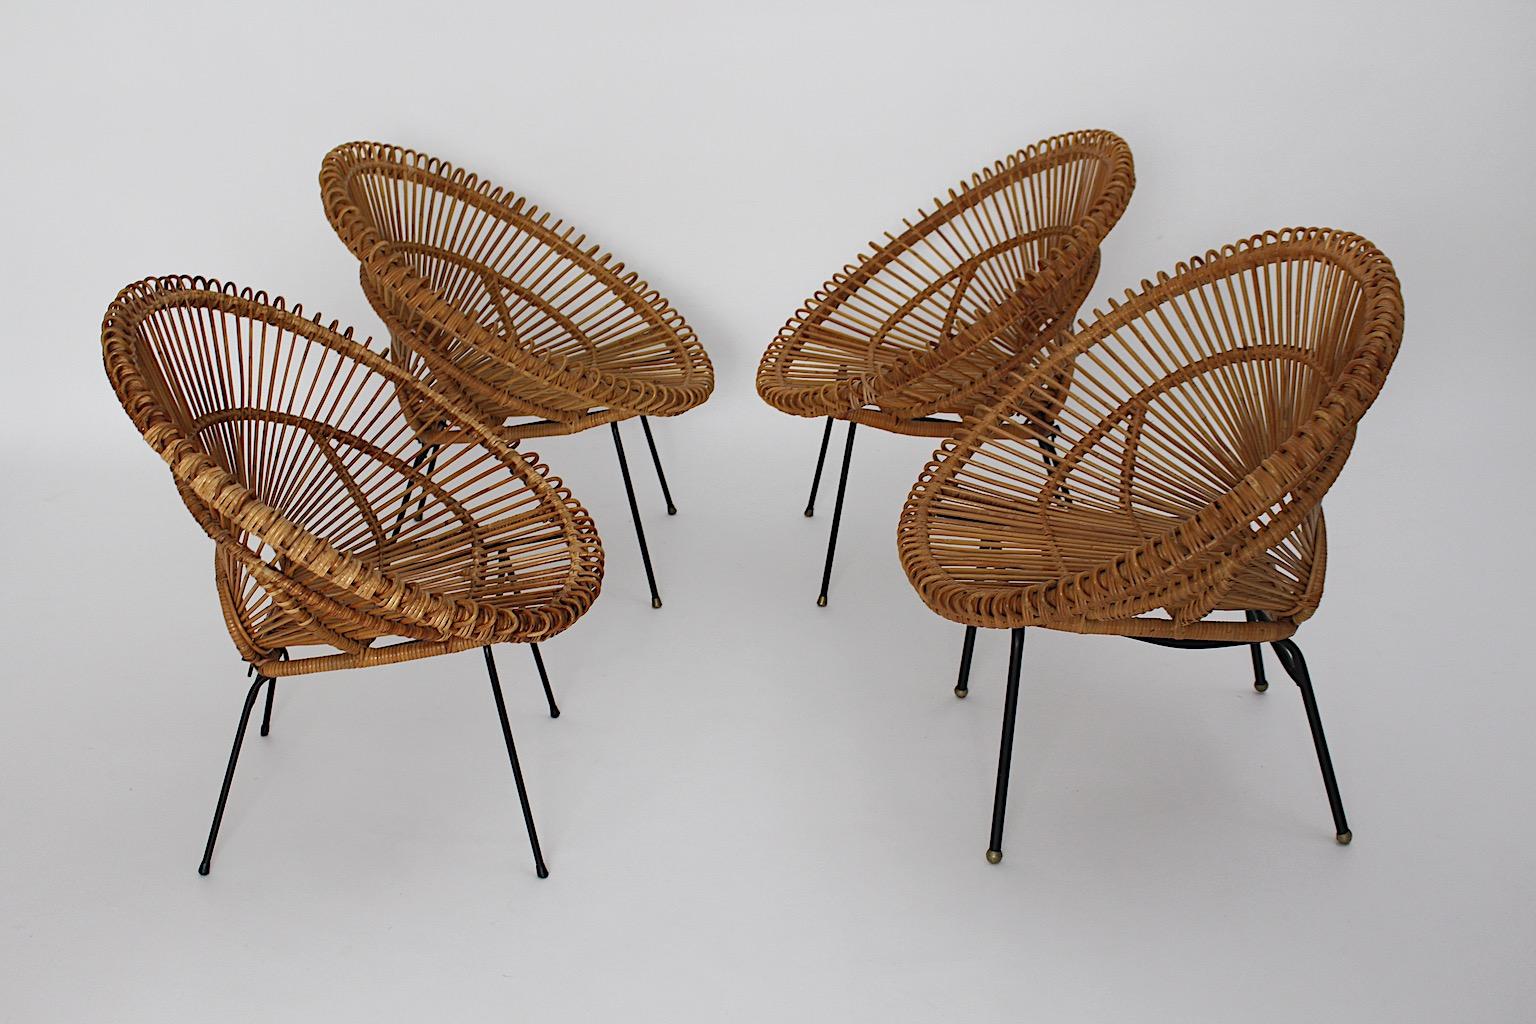 Mid-Century Modern Riviera Stil Vintage Terrasse Satz von vier handgefertigten Lounge-Stühle aus Rattan
zugeschrieben Janine Abraham und Dirk Jan Rol um 1960 Frankreich.
Die handgefertigten Rattan-Loungesessel zeigen ein schwarz lackiertes